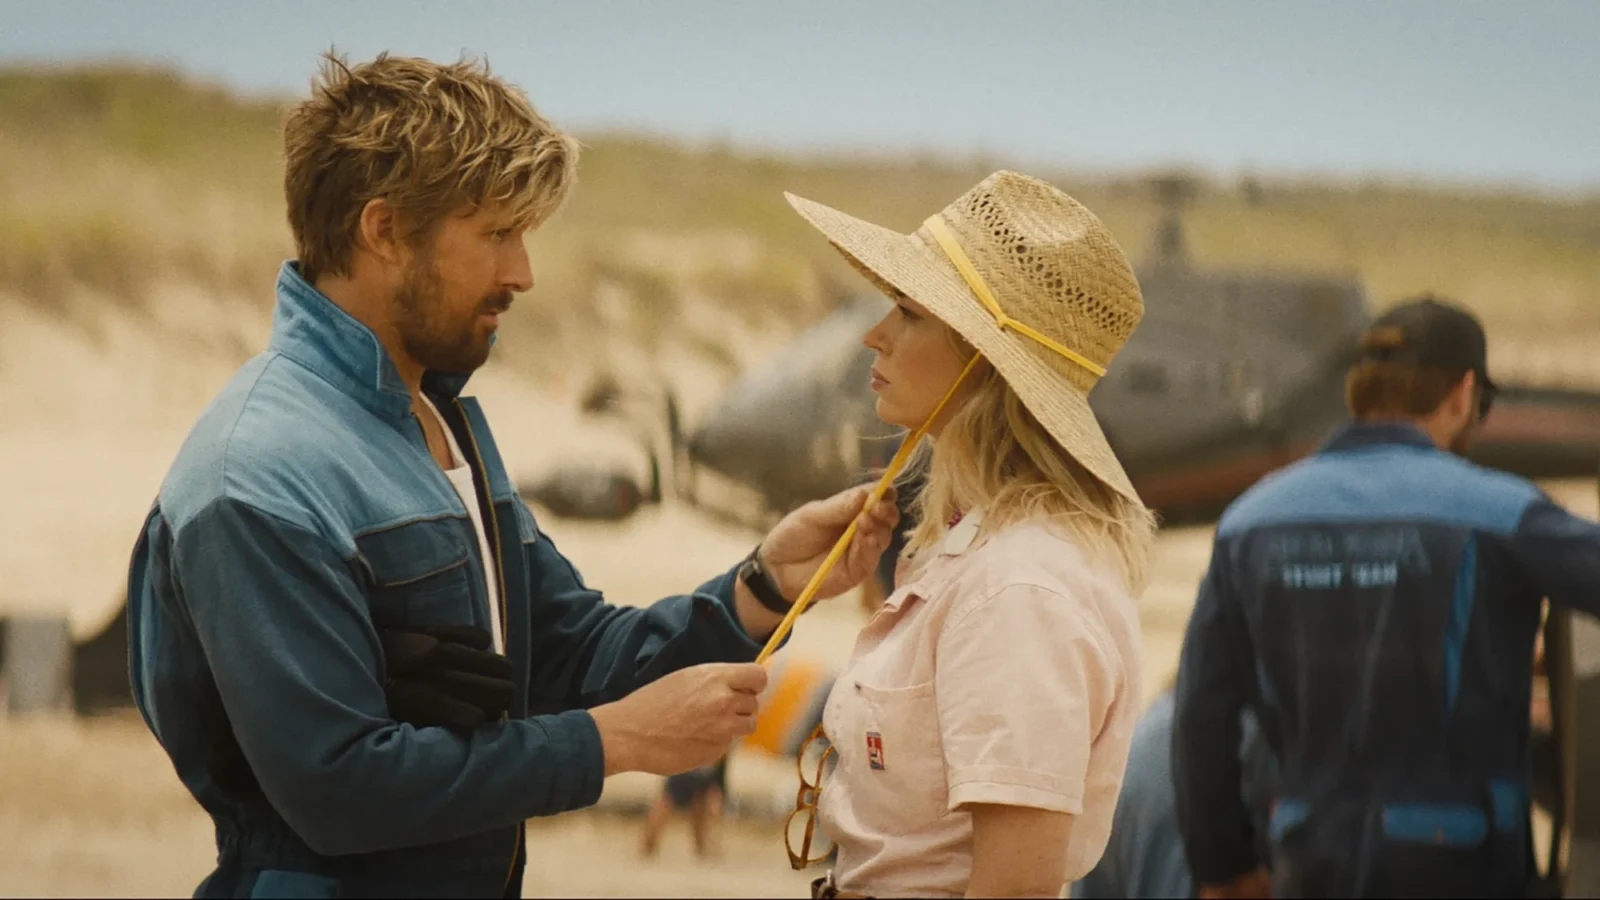 O Dublê, estrelado por Ryan Gosling e Emily Blunt, mistura ação com comédia romântica e mostra os bastidores de um set de filmagens.